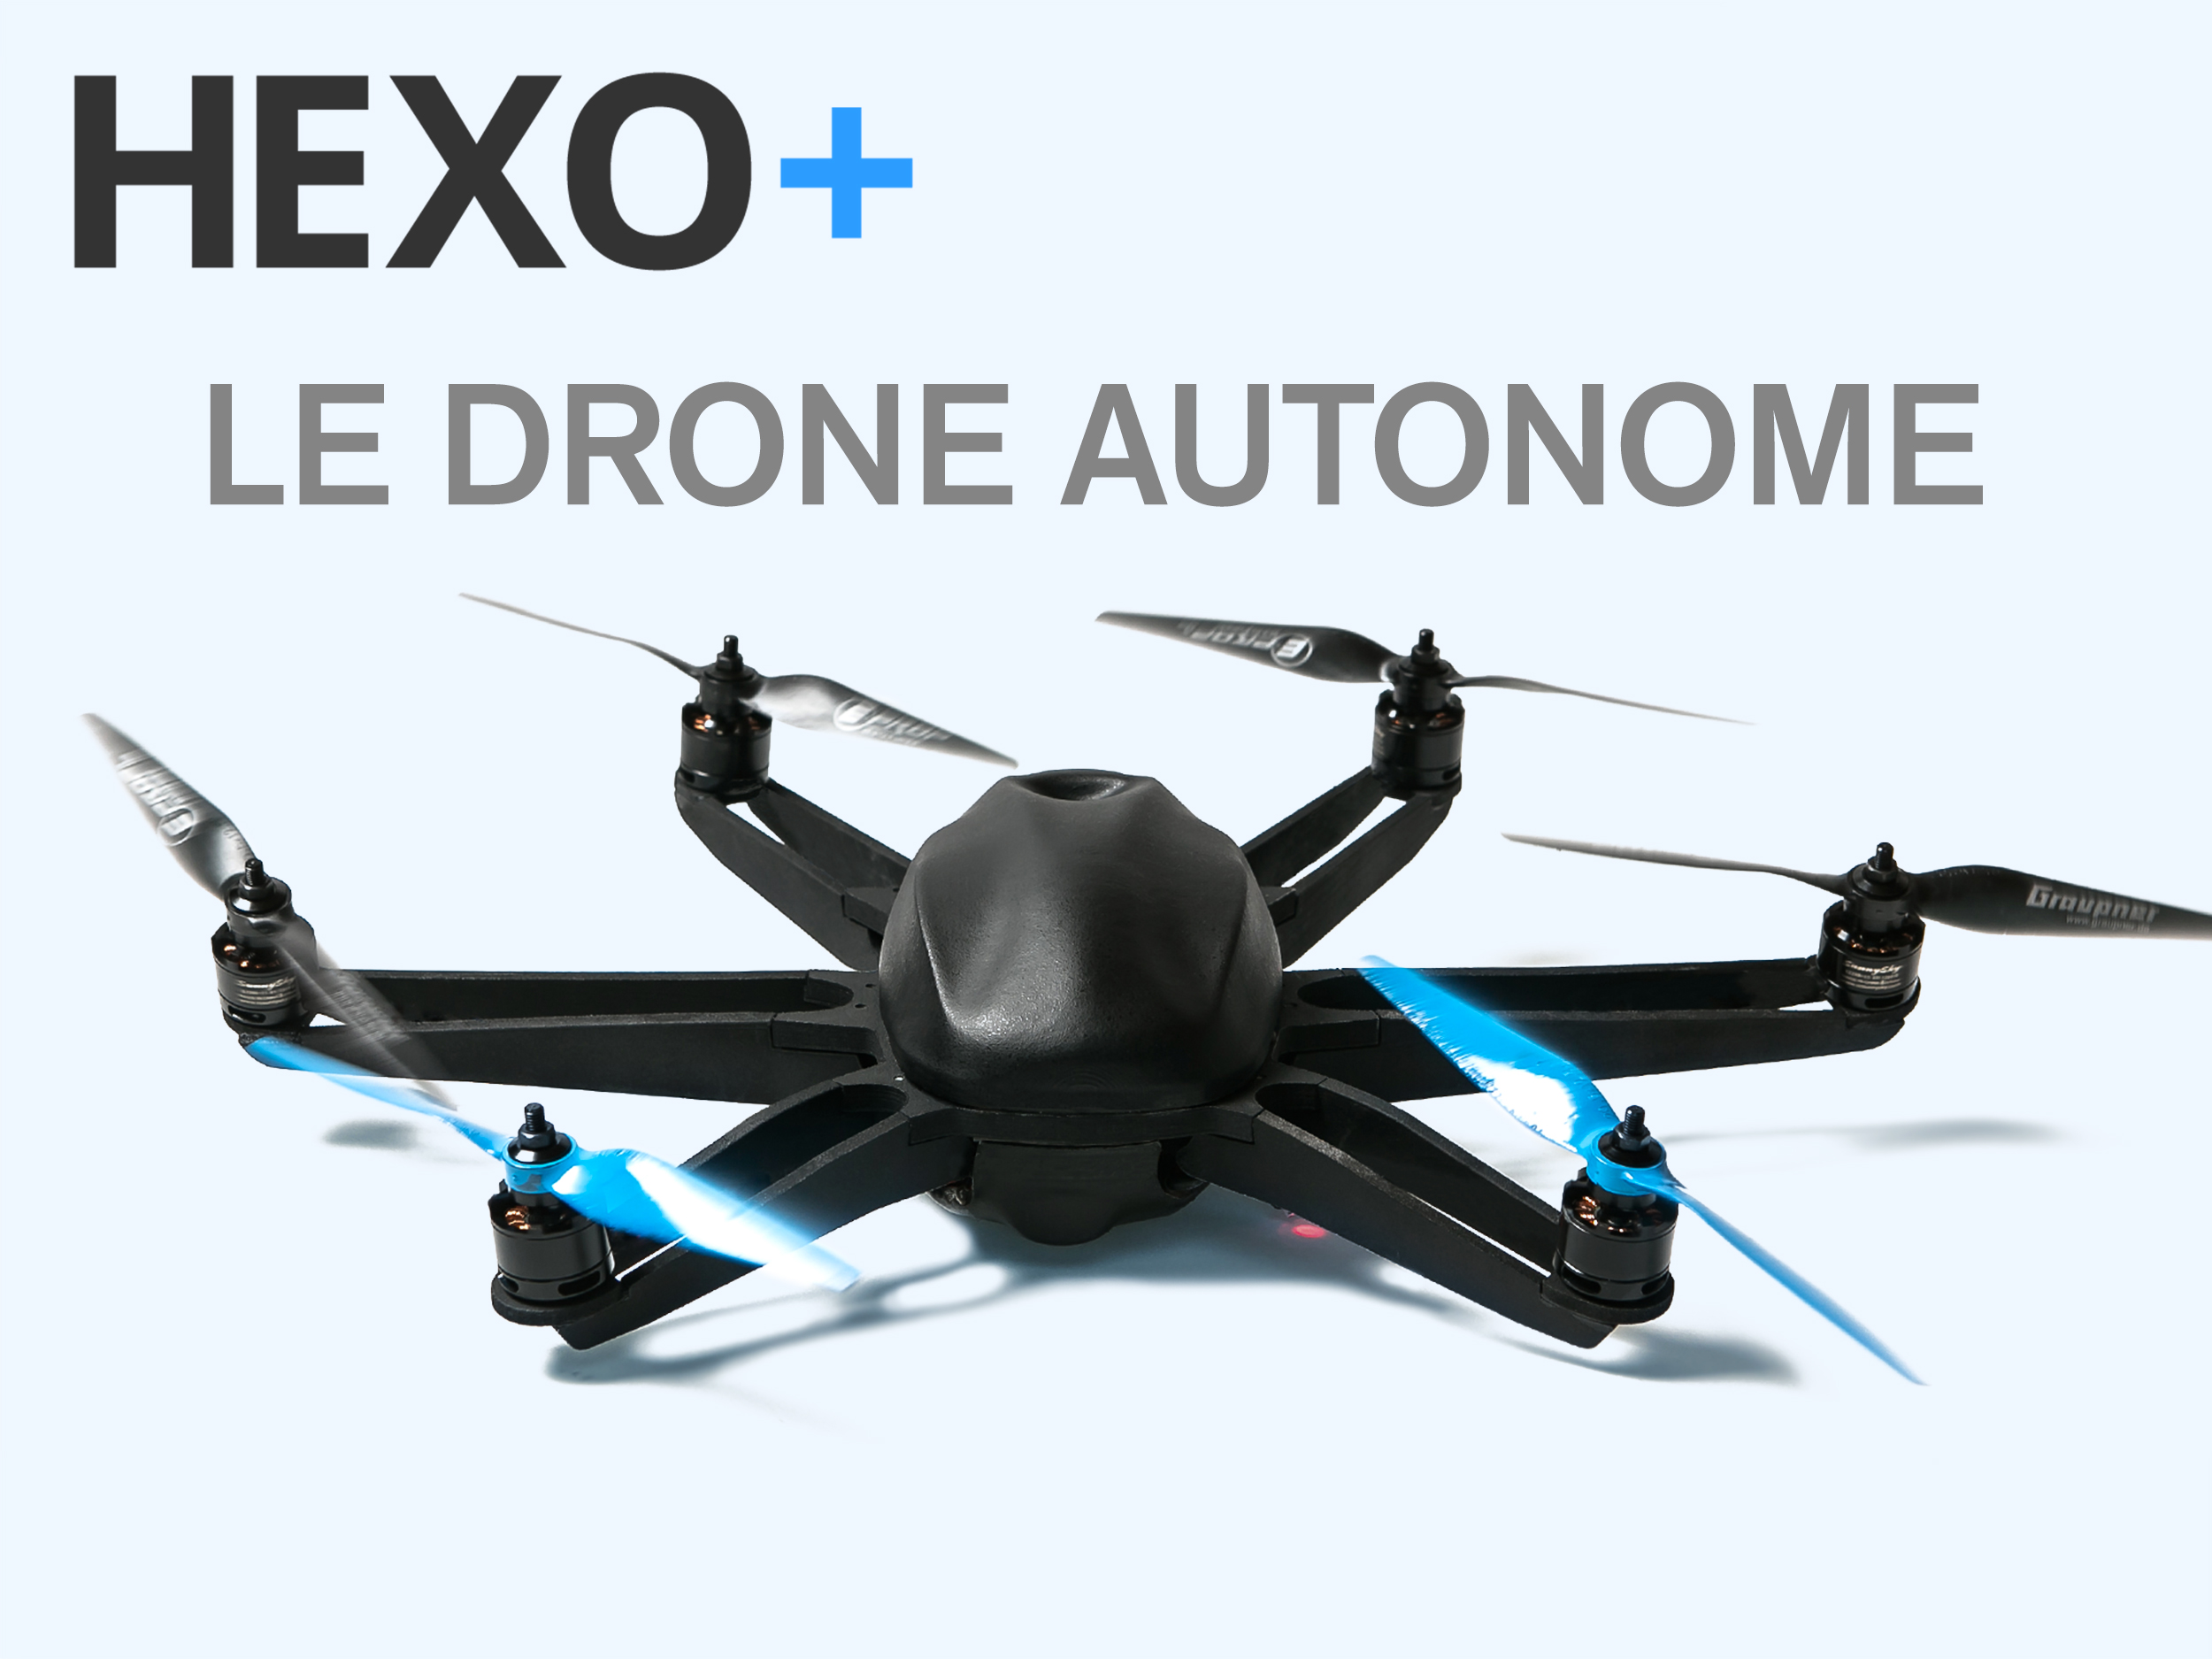 Hexo drone autonome